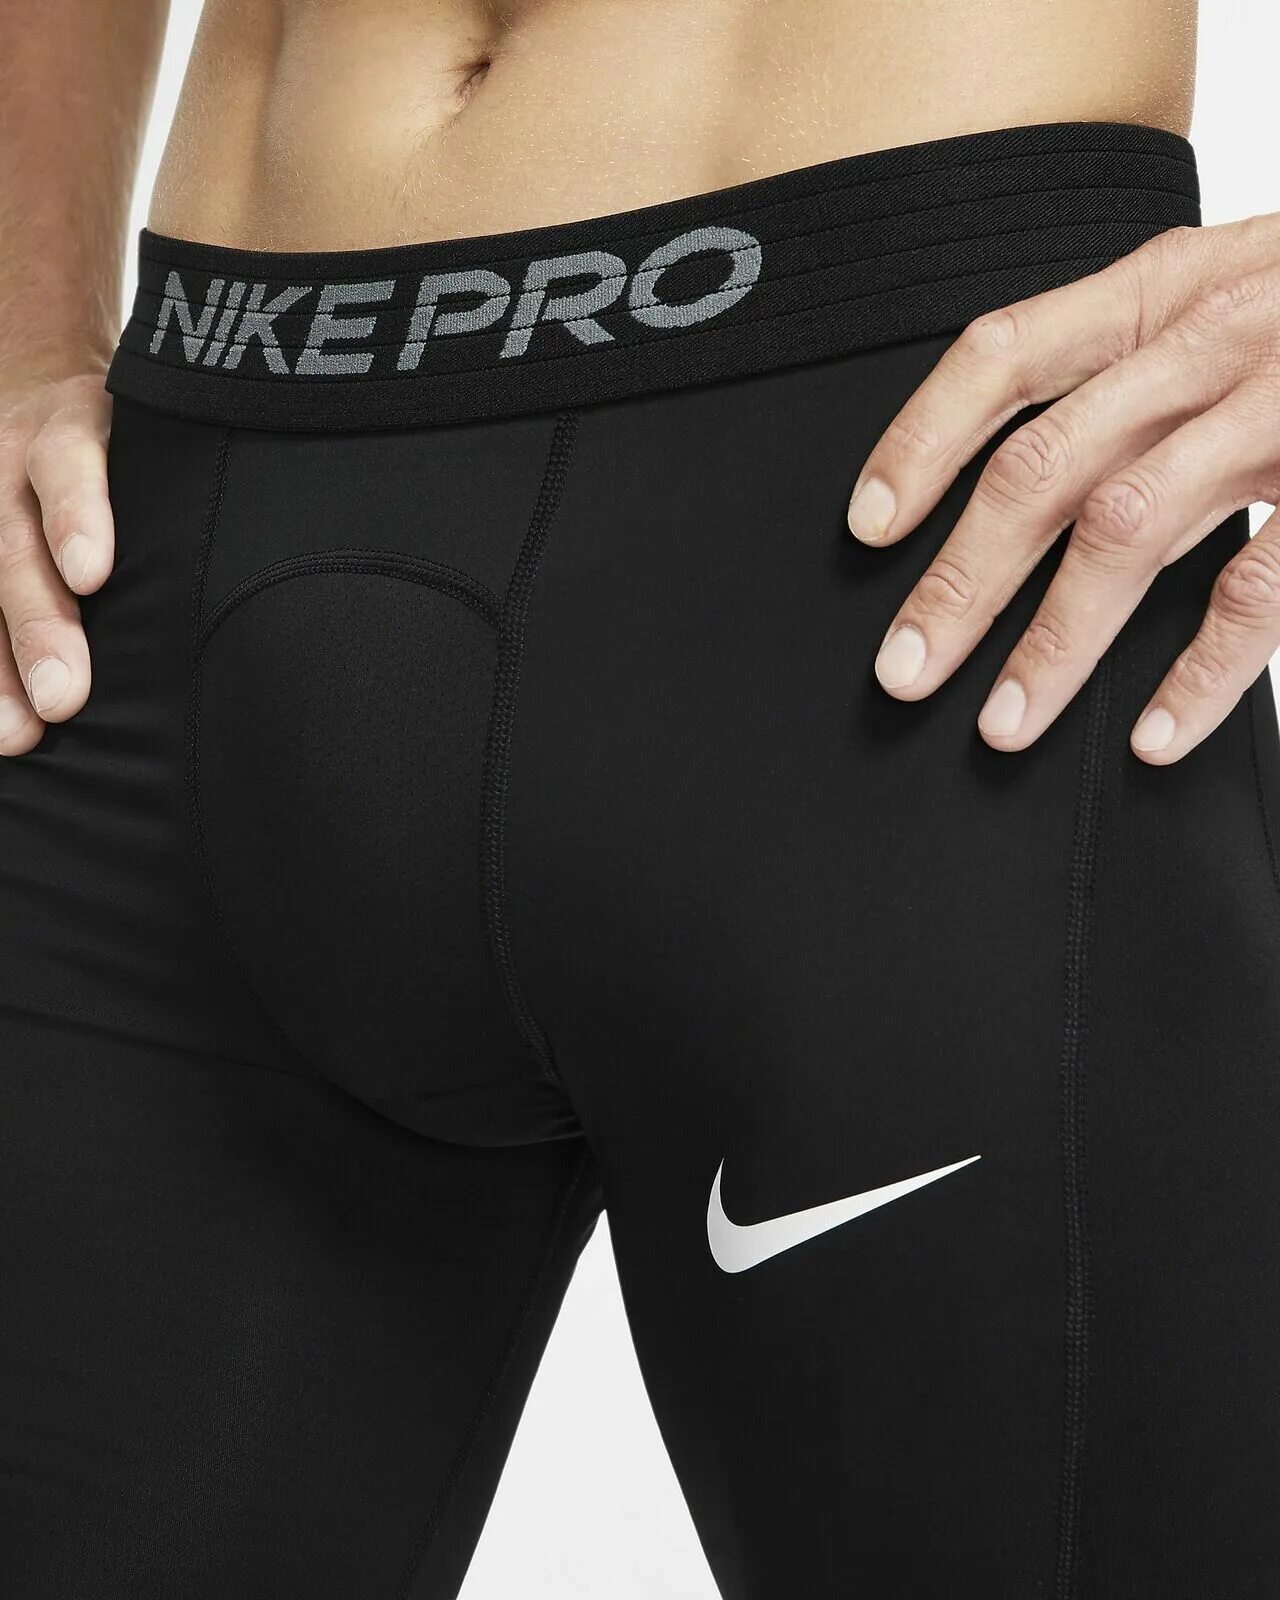 Nike pro мужские. Компрессионные шорты Nike Pro. Компрессионные шорты найк мужские. Nike Pro шорты мужские компрессионные. Nike Pro Dri-Fit компрессионные шорты черный.